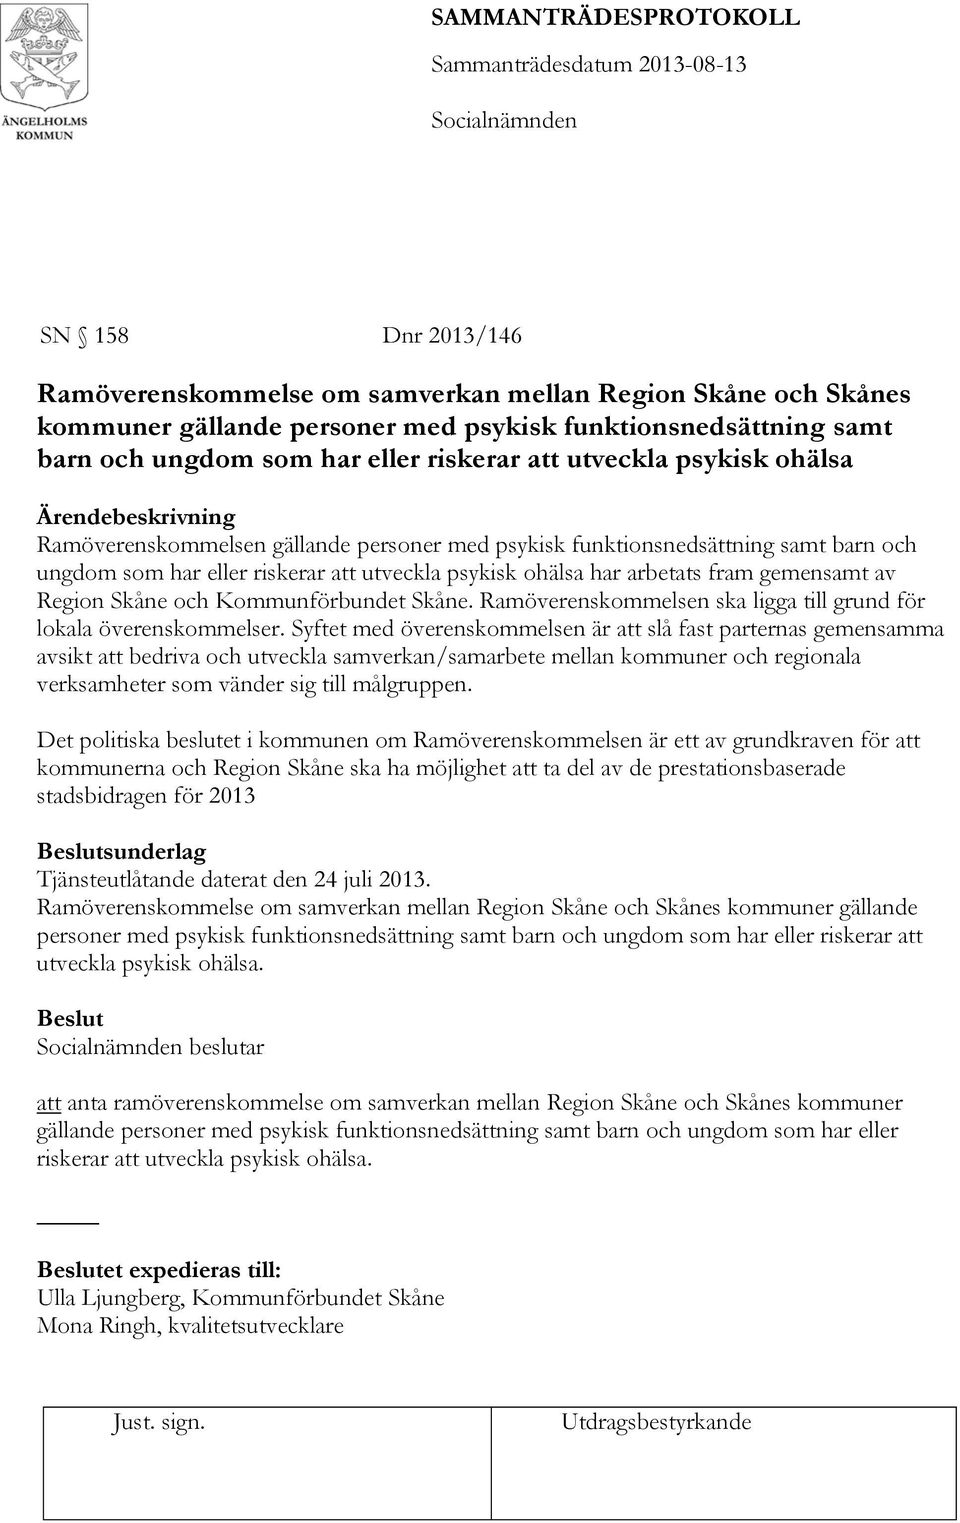 gemensamt av Region Skåne och Kommunförbundet Skåne. Ramöverenskommelsen ska ligga till grund för lokala överenskommelser.